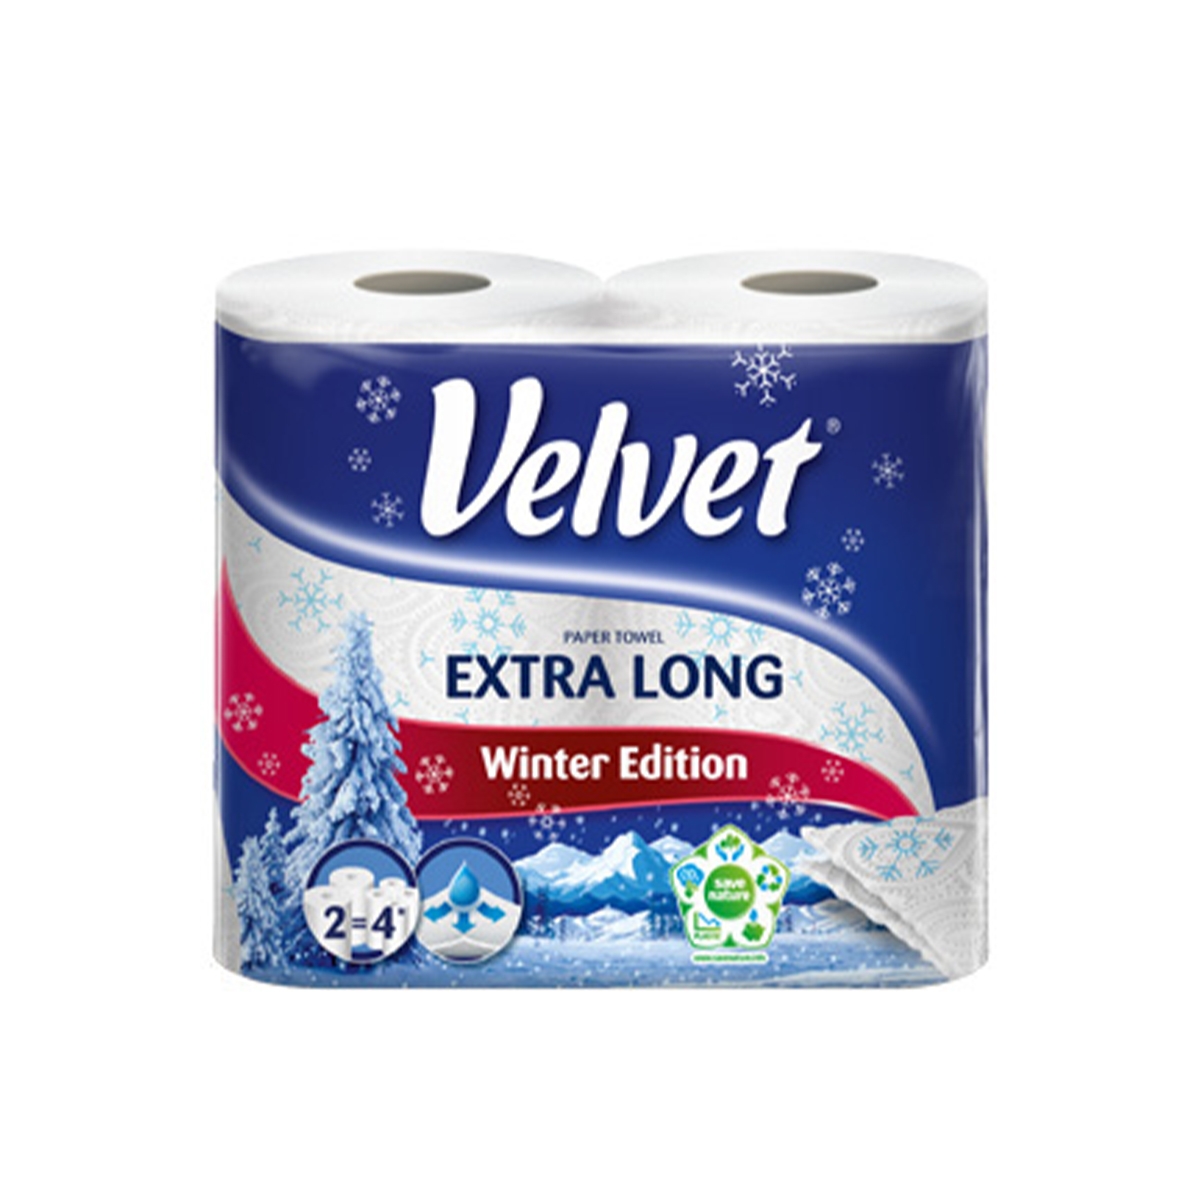 Velvet Extra Long papírové utěrky 2 ks